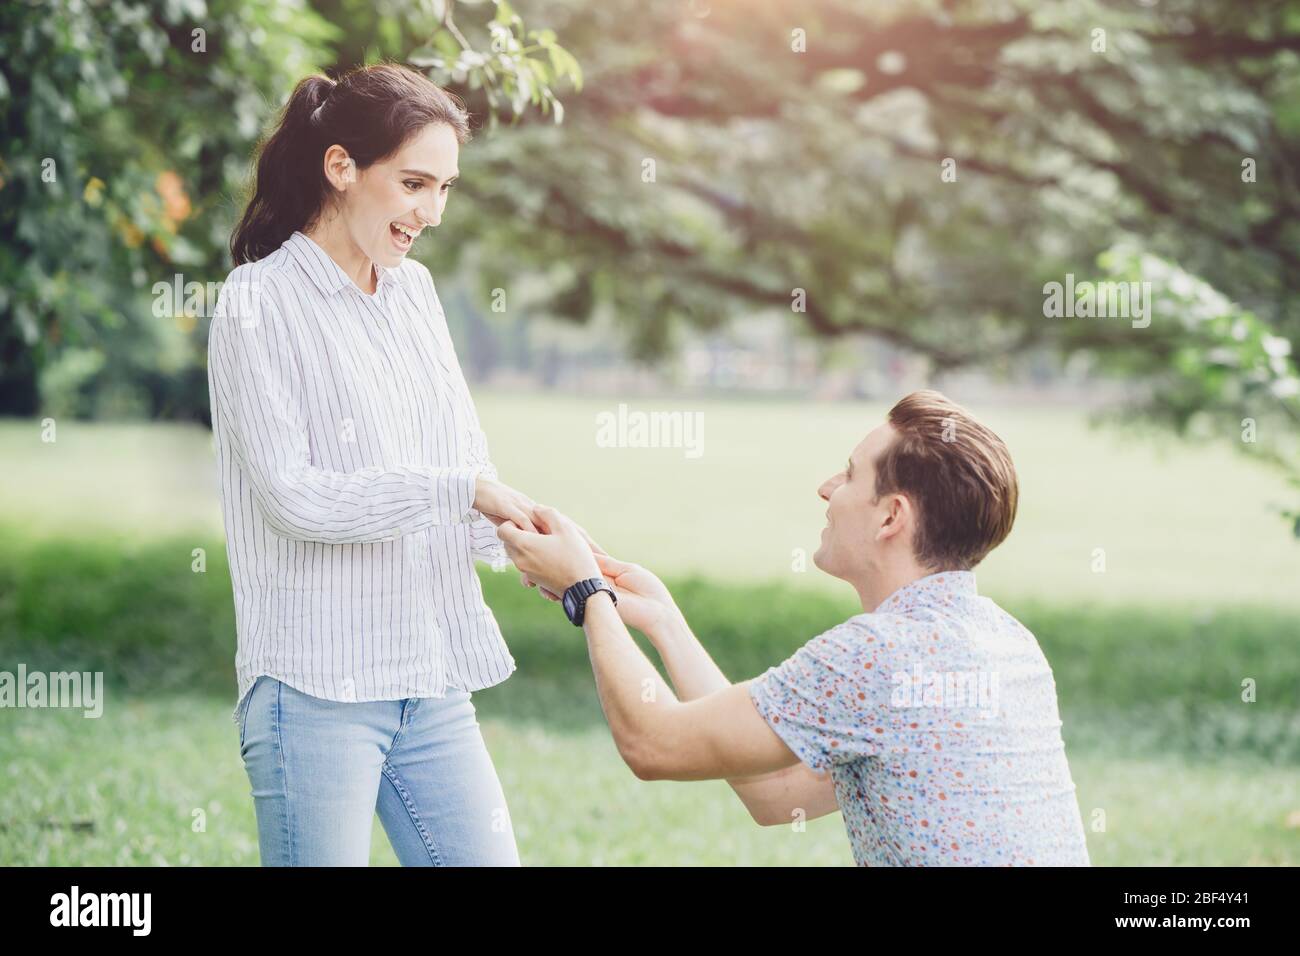 Fotos von Engagements, Heiratsanträge und neu verlobt Paare Liebhaber junger Mann und Dame im Freien grünen Park. Stockfoto